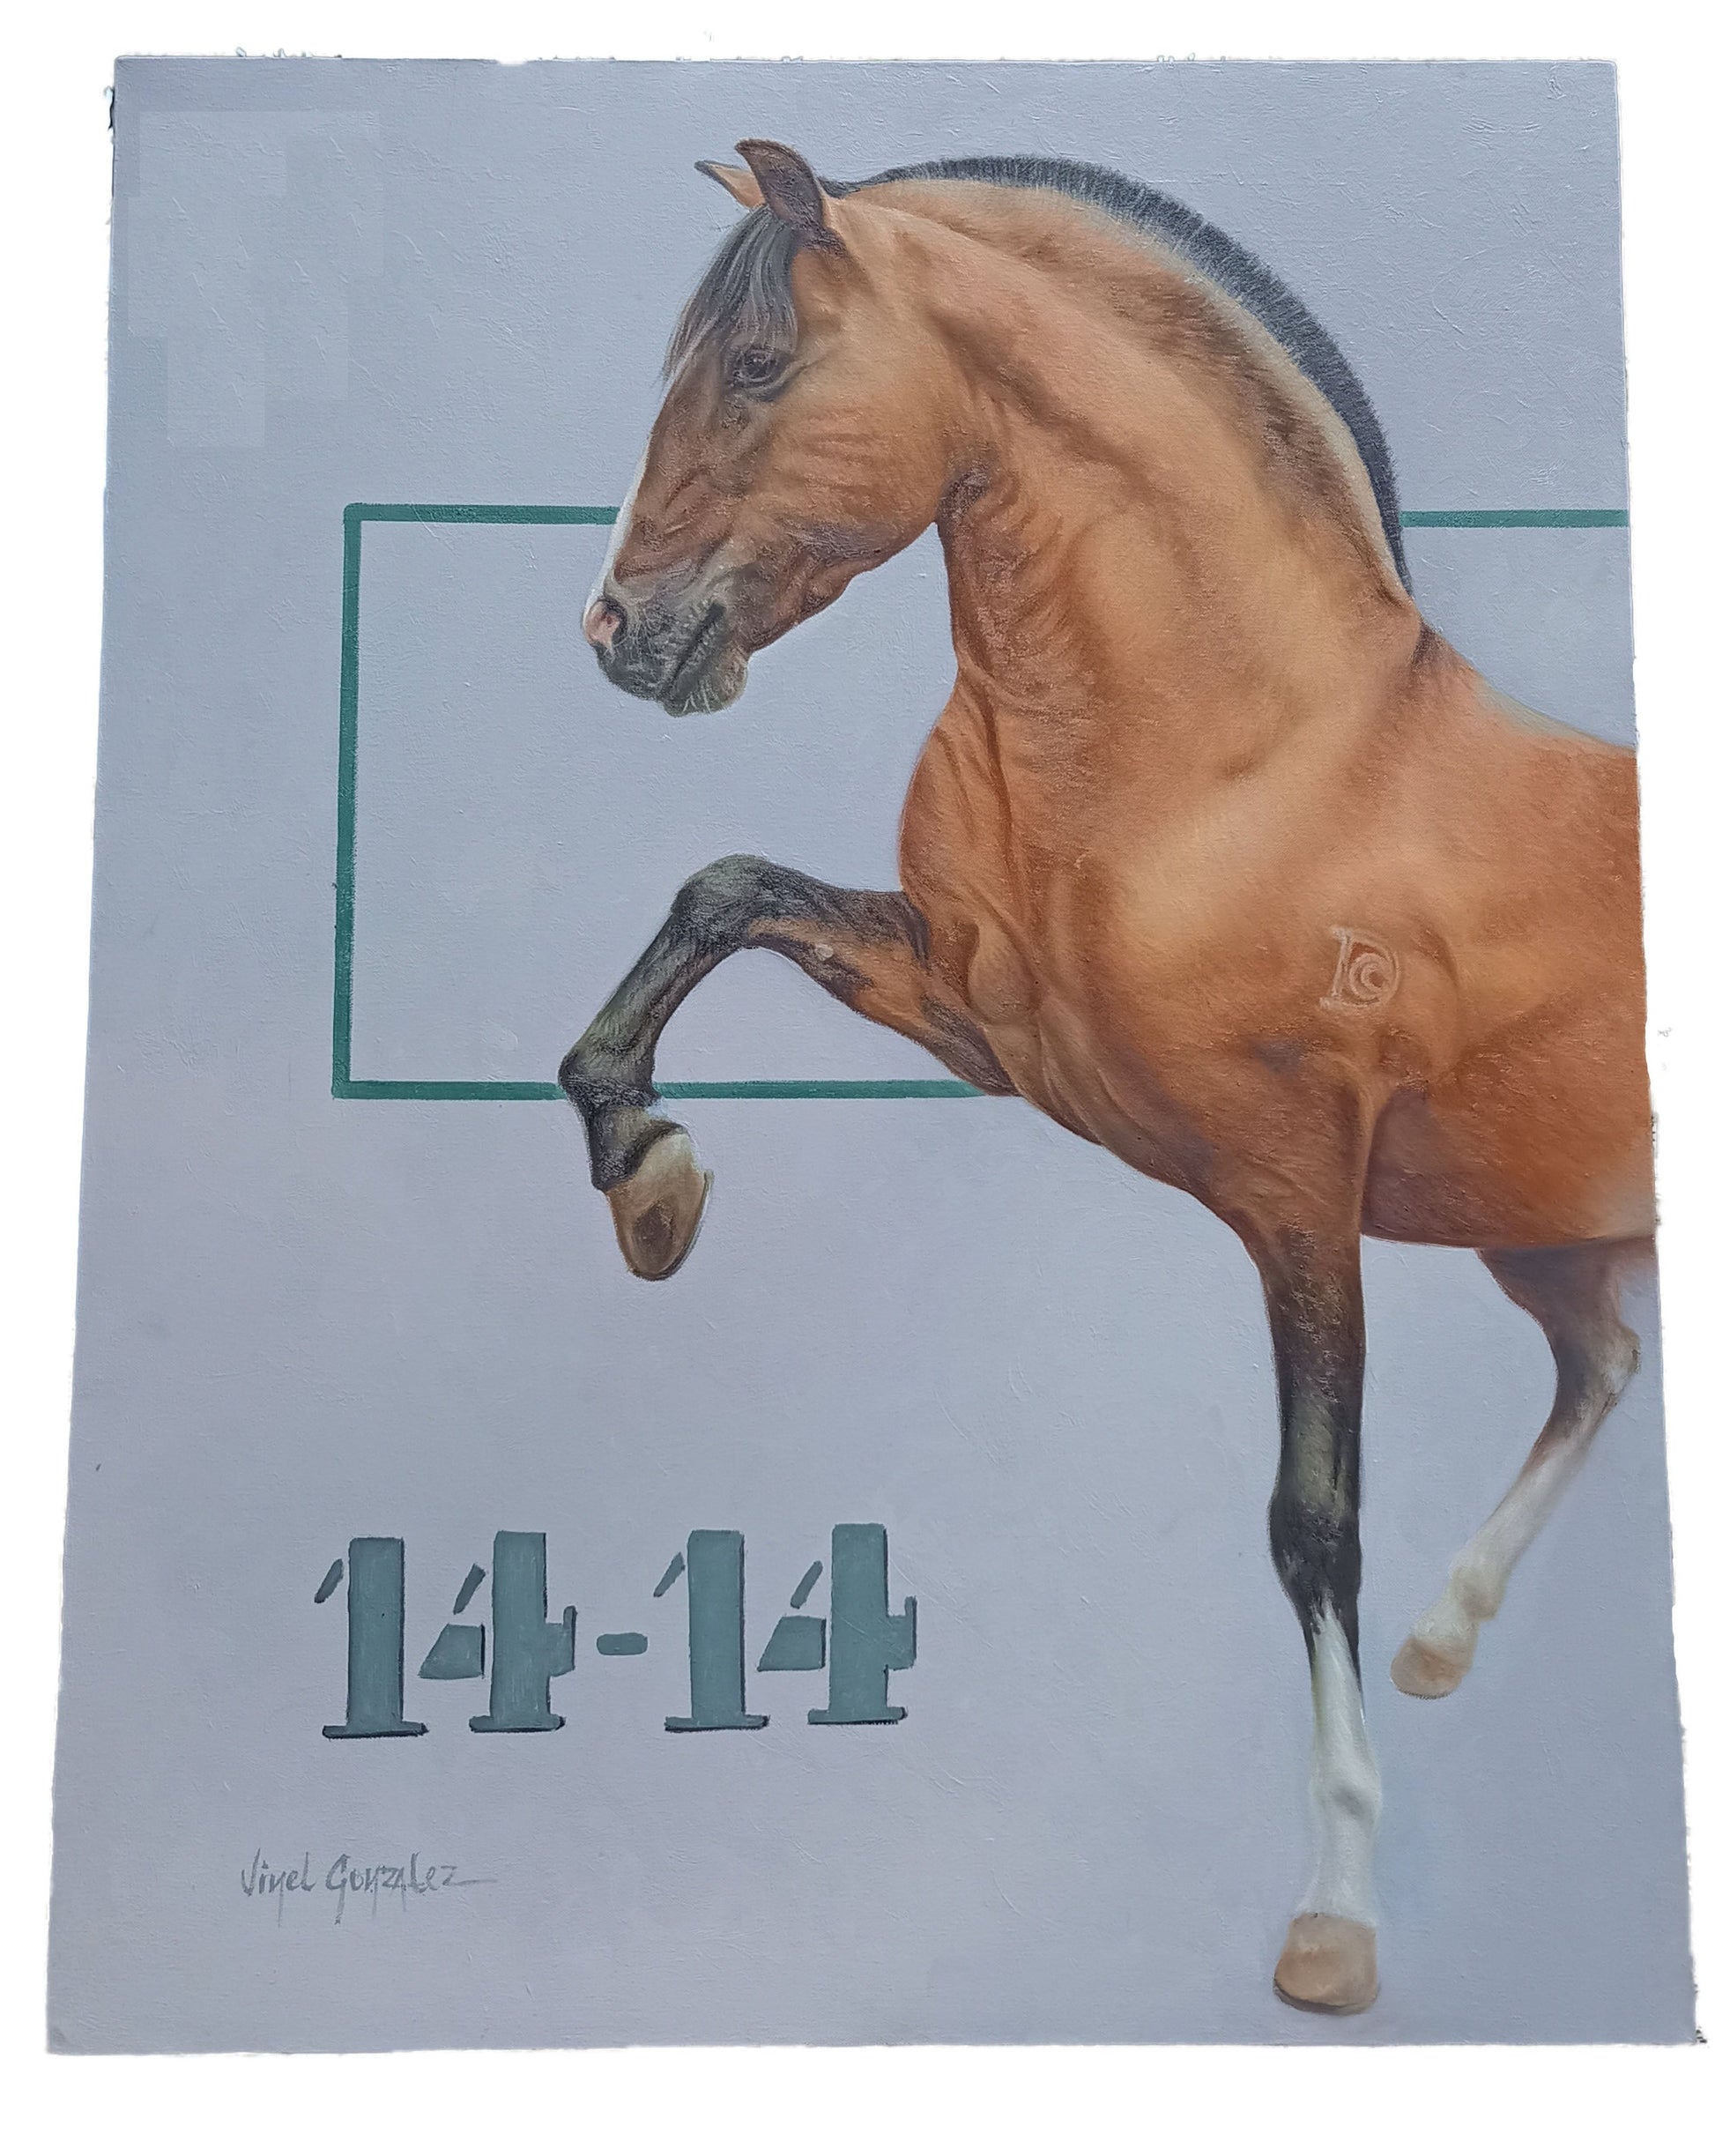 Horse Portrait - Coltan - Canvas on Oil - Home decor - Horse business - kmnk deco